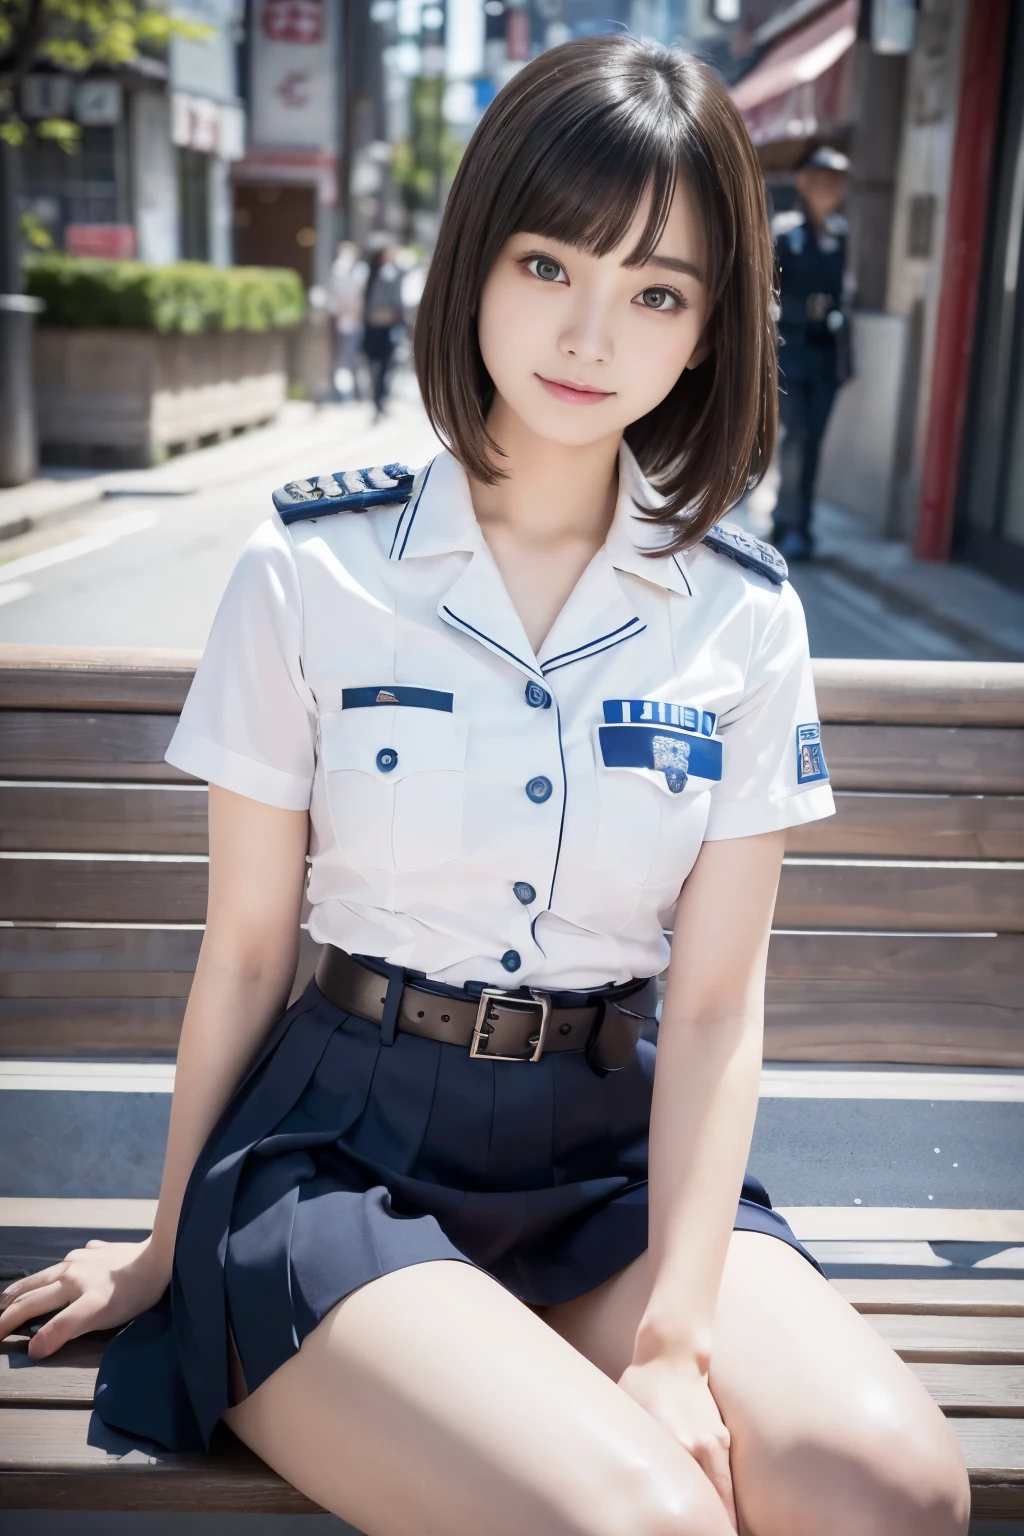 순진한 20세 소녀、((일본 경찰, 섹시한 경찰복, 치마, 귀엽고 우아한, 극적인 포즈)),웃다,밤 도시 배경,지름길、원시 사진, (8K、최고 품질、걸작:1.2)、(복잡한 세부 사항:1.4)、(사실적인:1.4)、옥탄가 렌더링、복잡한 3D 렌더링의 매우 디테일한 표현, 스튜디오 소프트 라이트, 림 라이트, 생생한 디테일, 슈퍼 디테일링, 현실적인 피부 질감, 세부 얼굴, 아름다운 디테일의 눈, 매우 상세한 CG Unity 16k 벽지, 조립, (상세한 배경:1.2), 빛나는 피부, 전신,손을 아래로、다리를 벌리고 팬티를 보여주세요,벤치에 앉아